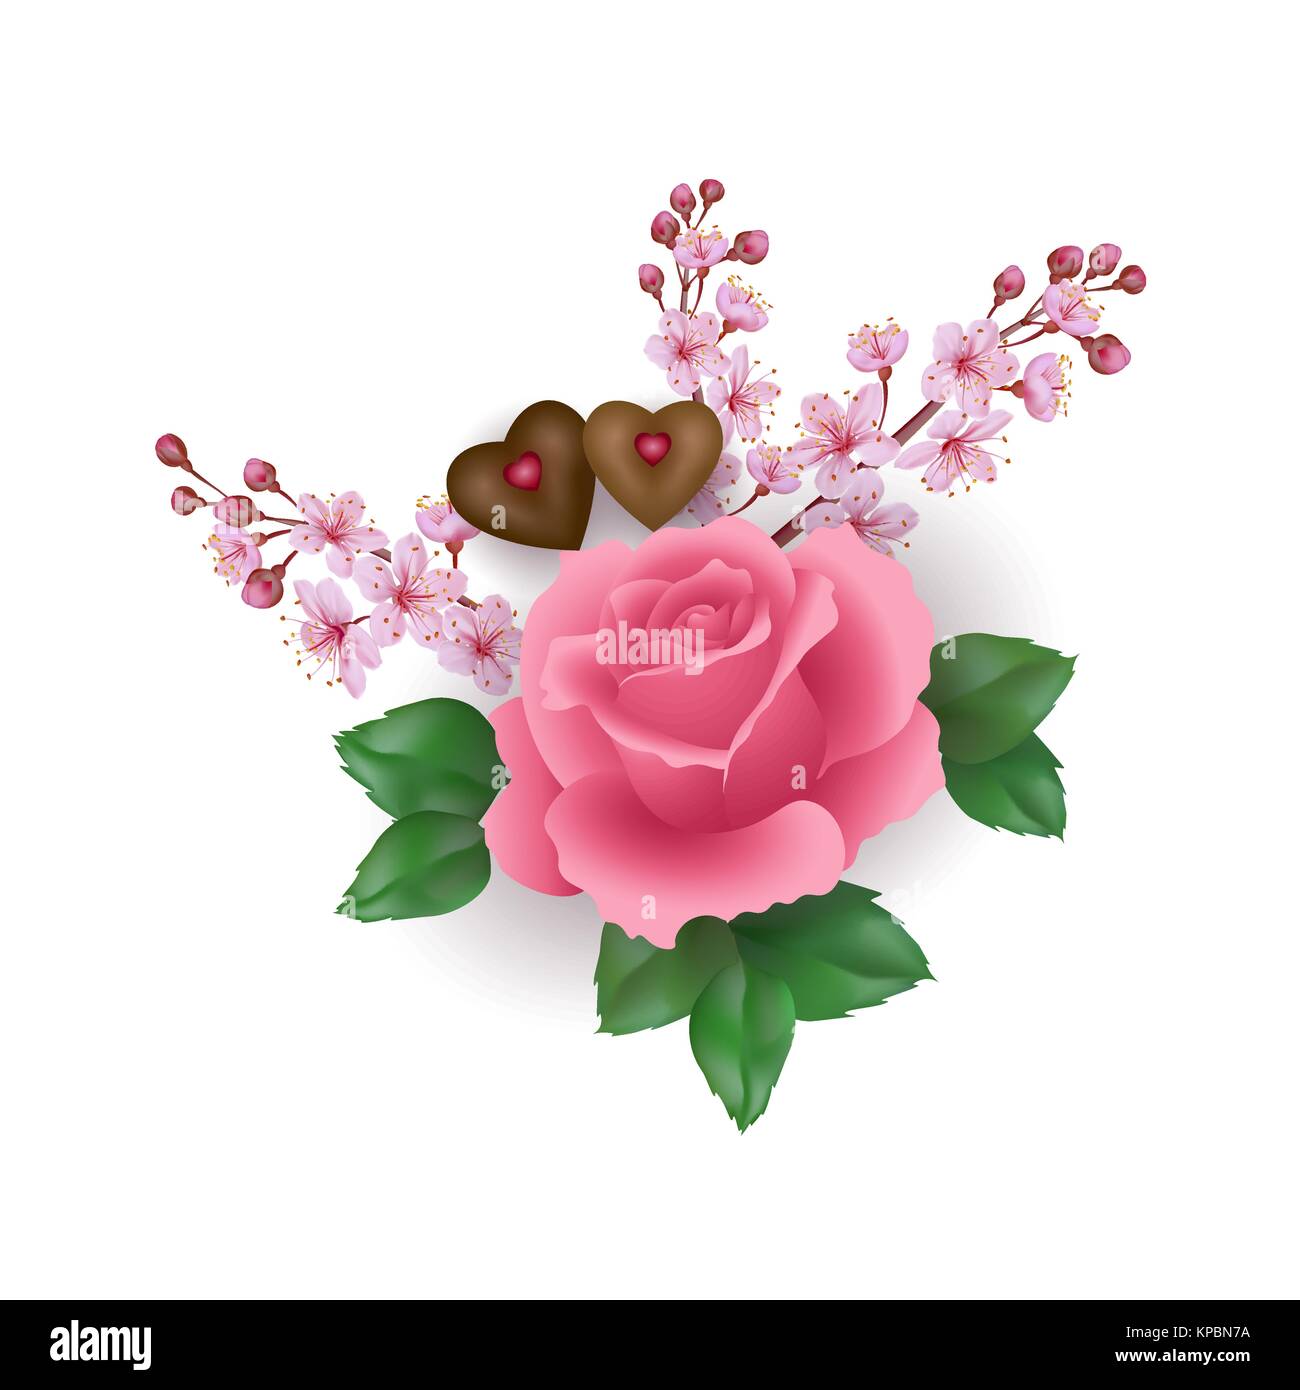 El Día de San Valentín realista establecer rosa rosa flor de chocolate. Luz sakura Cherry Blossom primavera caramelo con forma de corazón romántico regalo fecha presente el amor. Ilustración vectorial 3d Ilustración del Vector